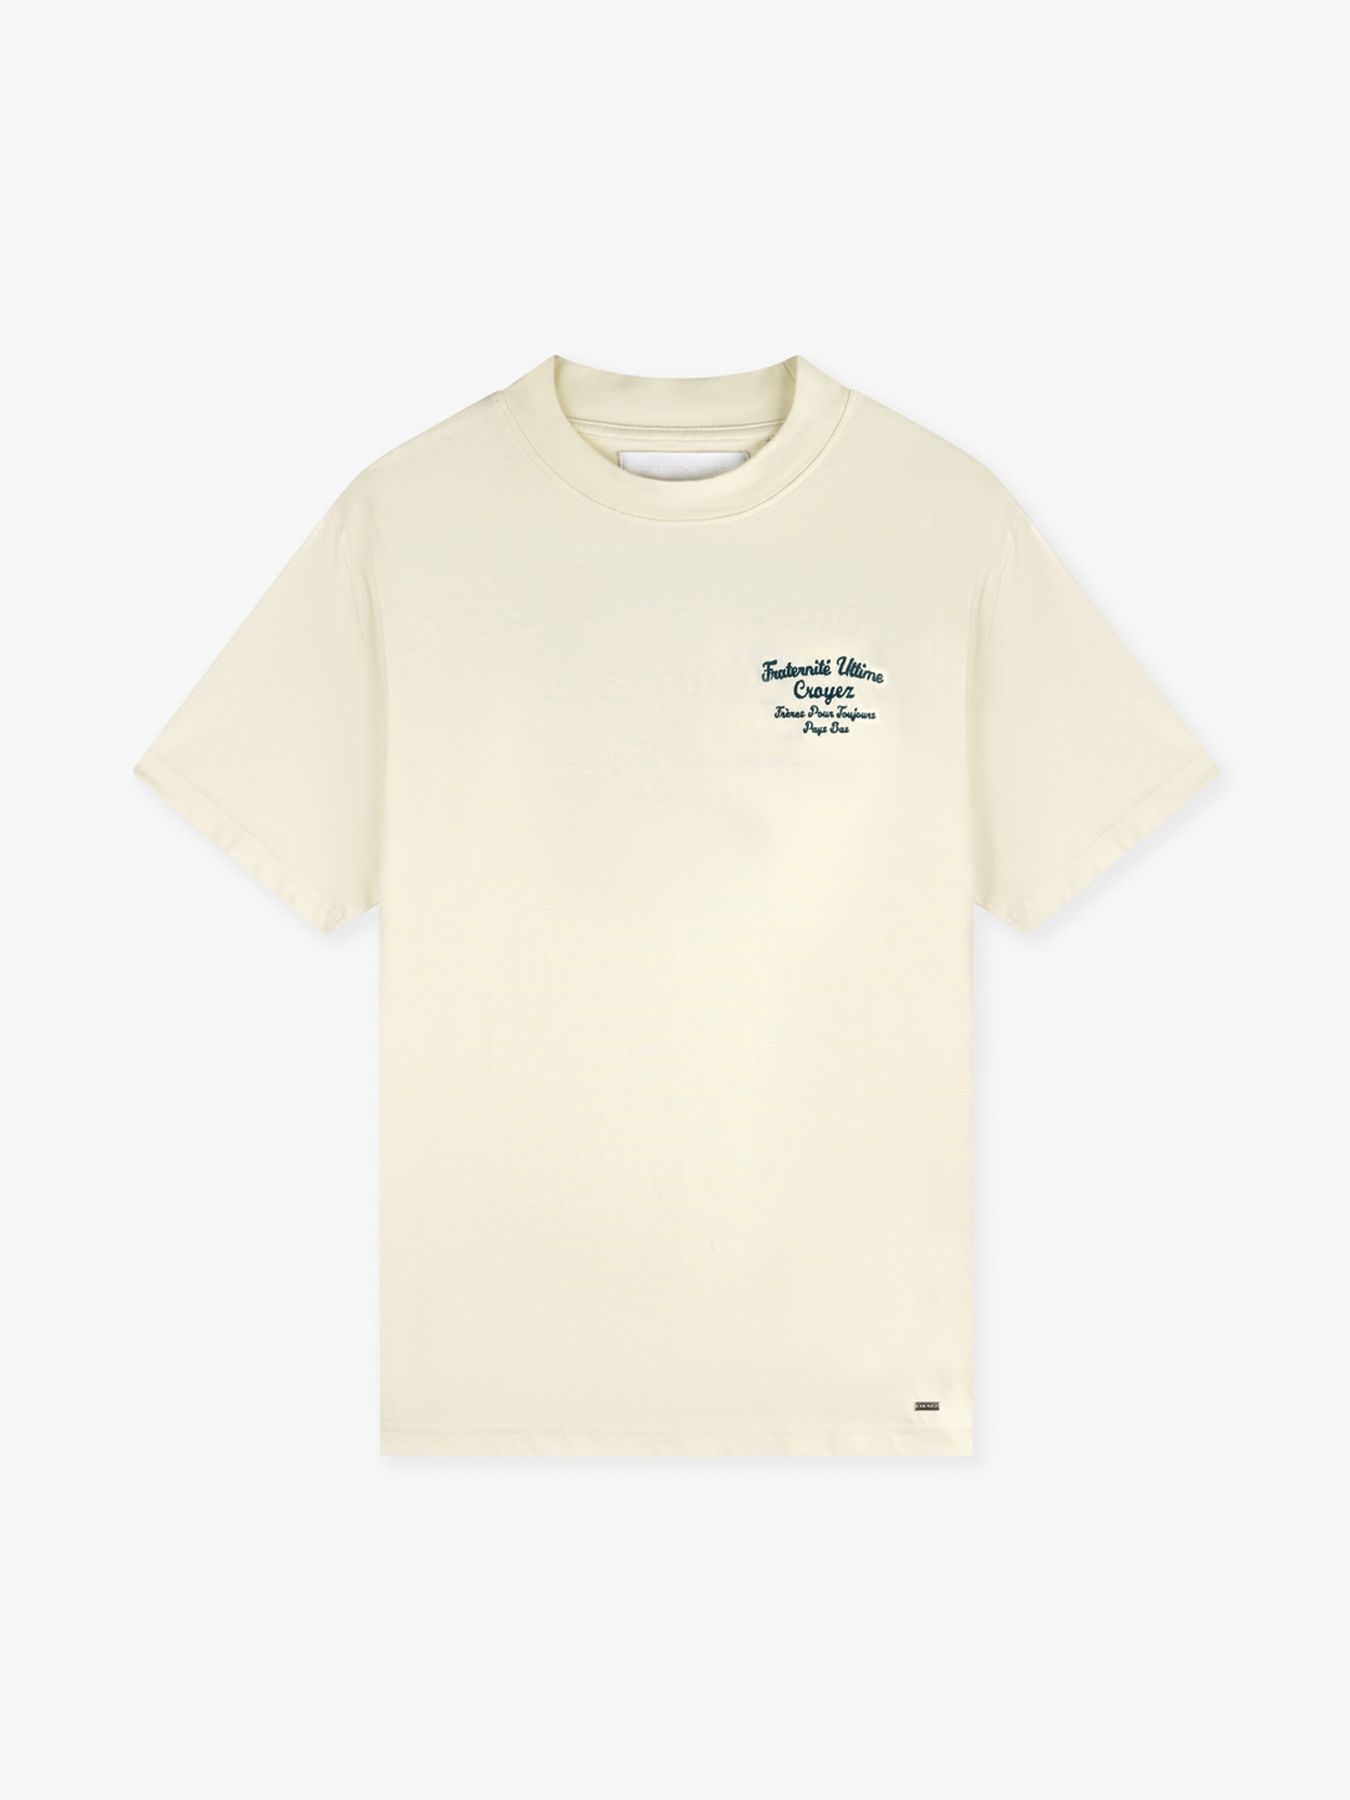 Croyez Fraternite T-shirt Buttercream-washed olive 00108225-785